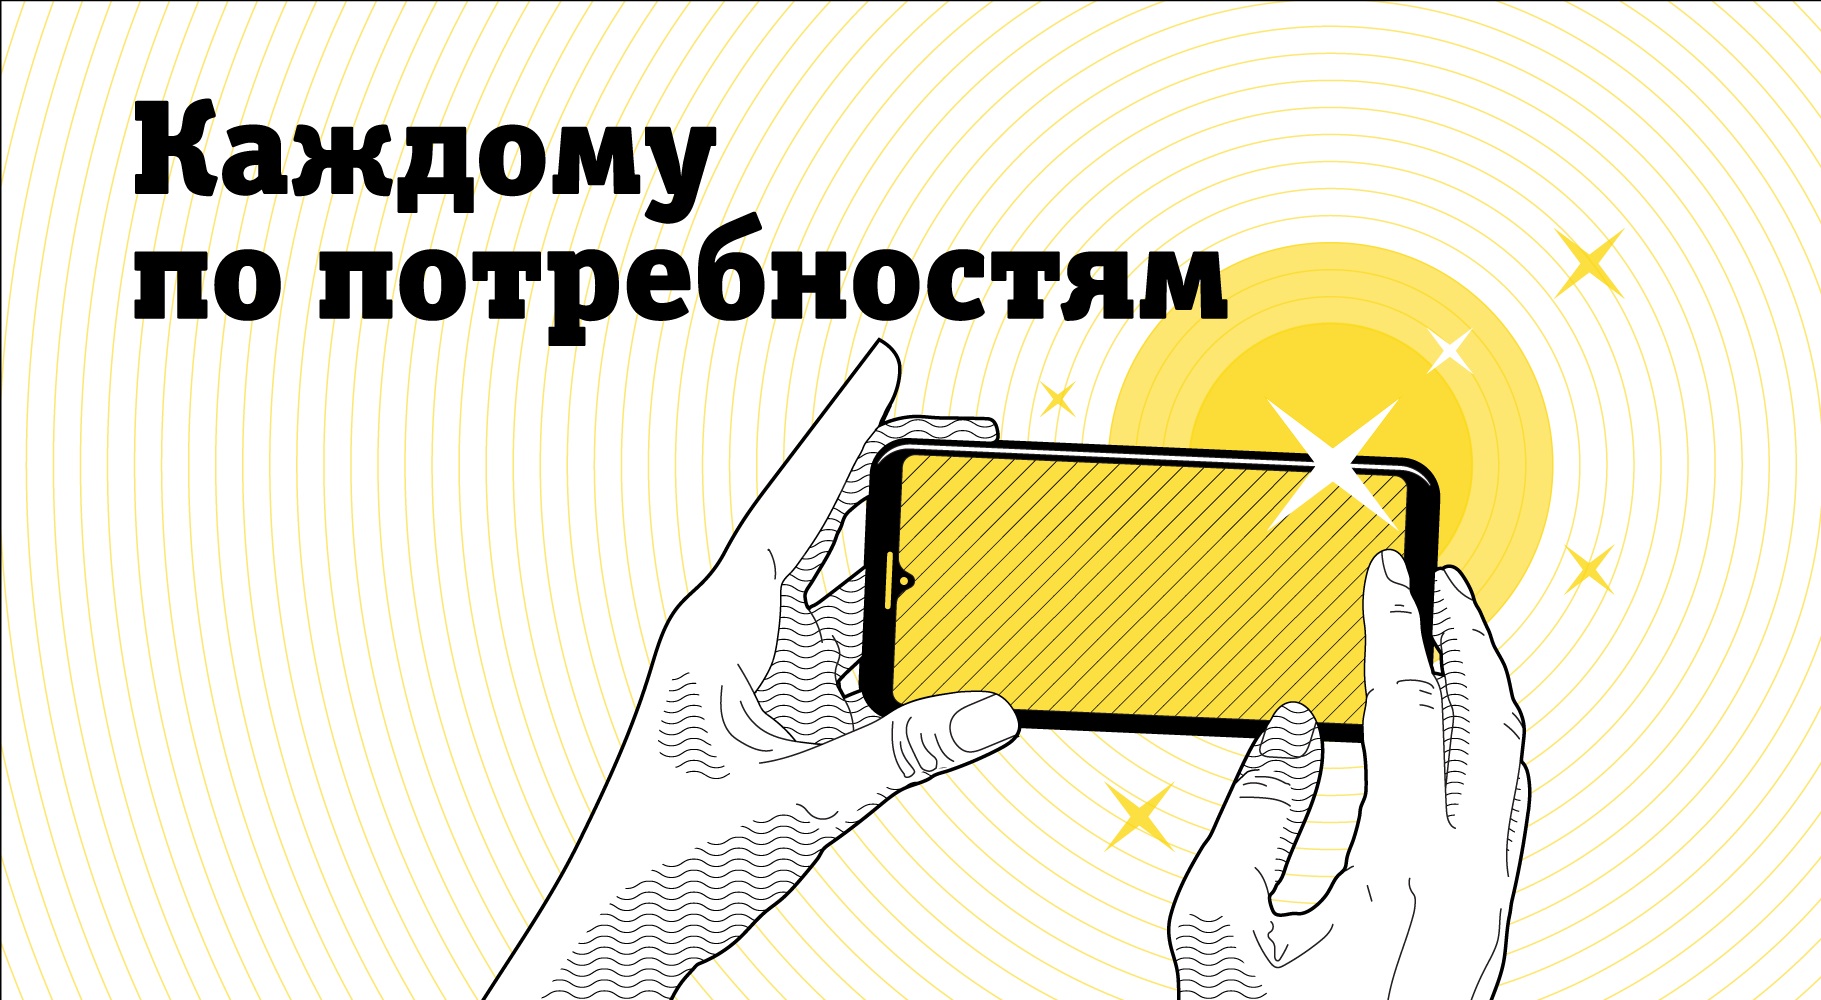 Билайн обеспечит новыми смартфонами клиентов старшего возраста в Москве и Московской области